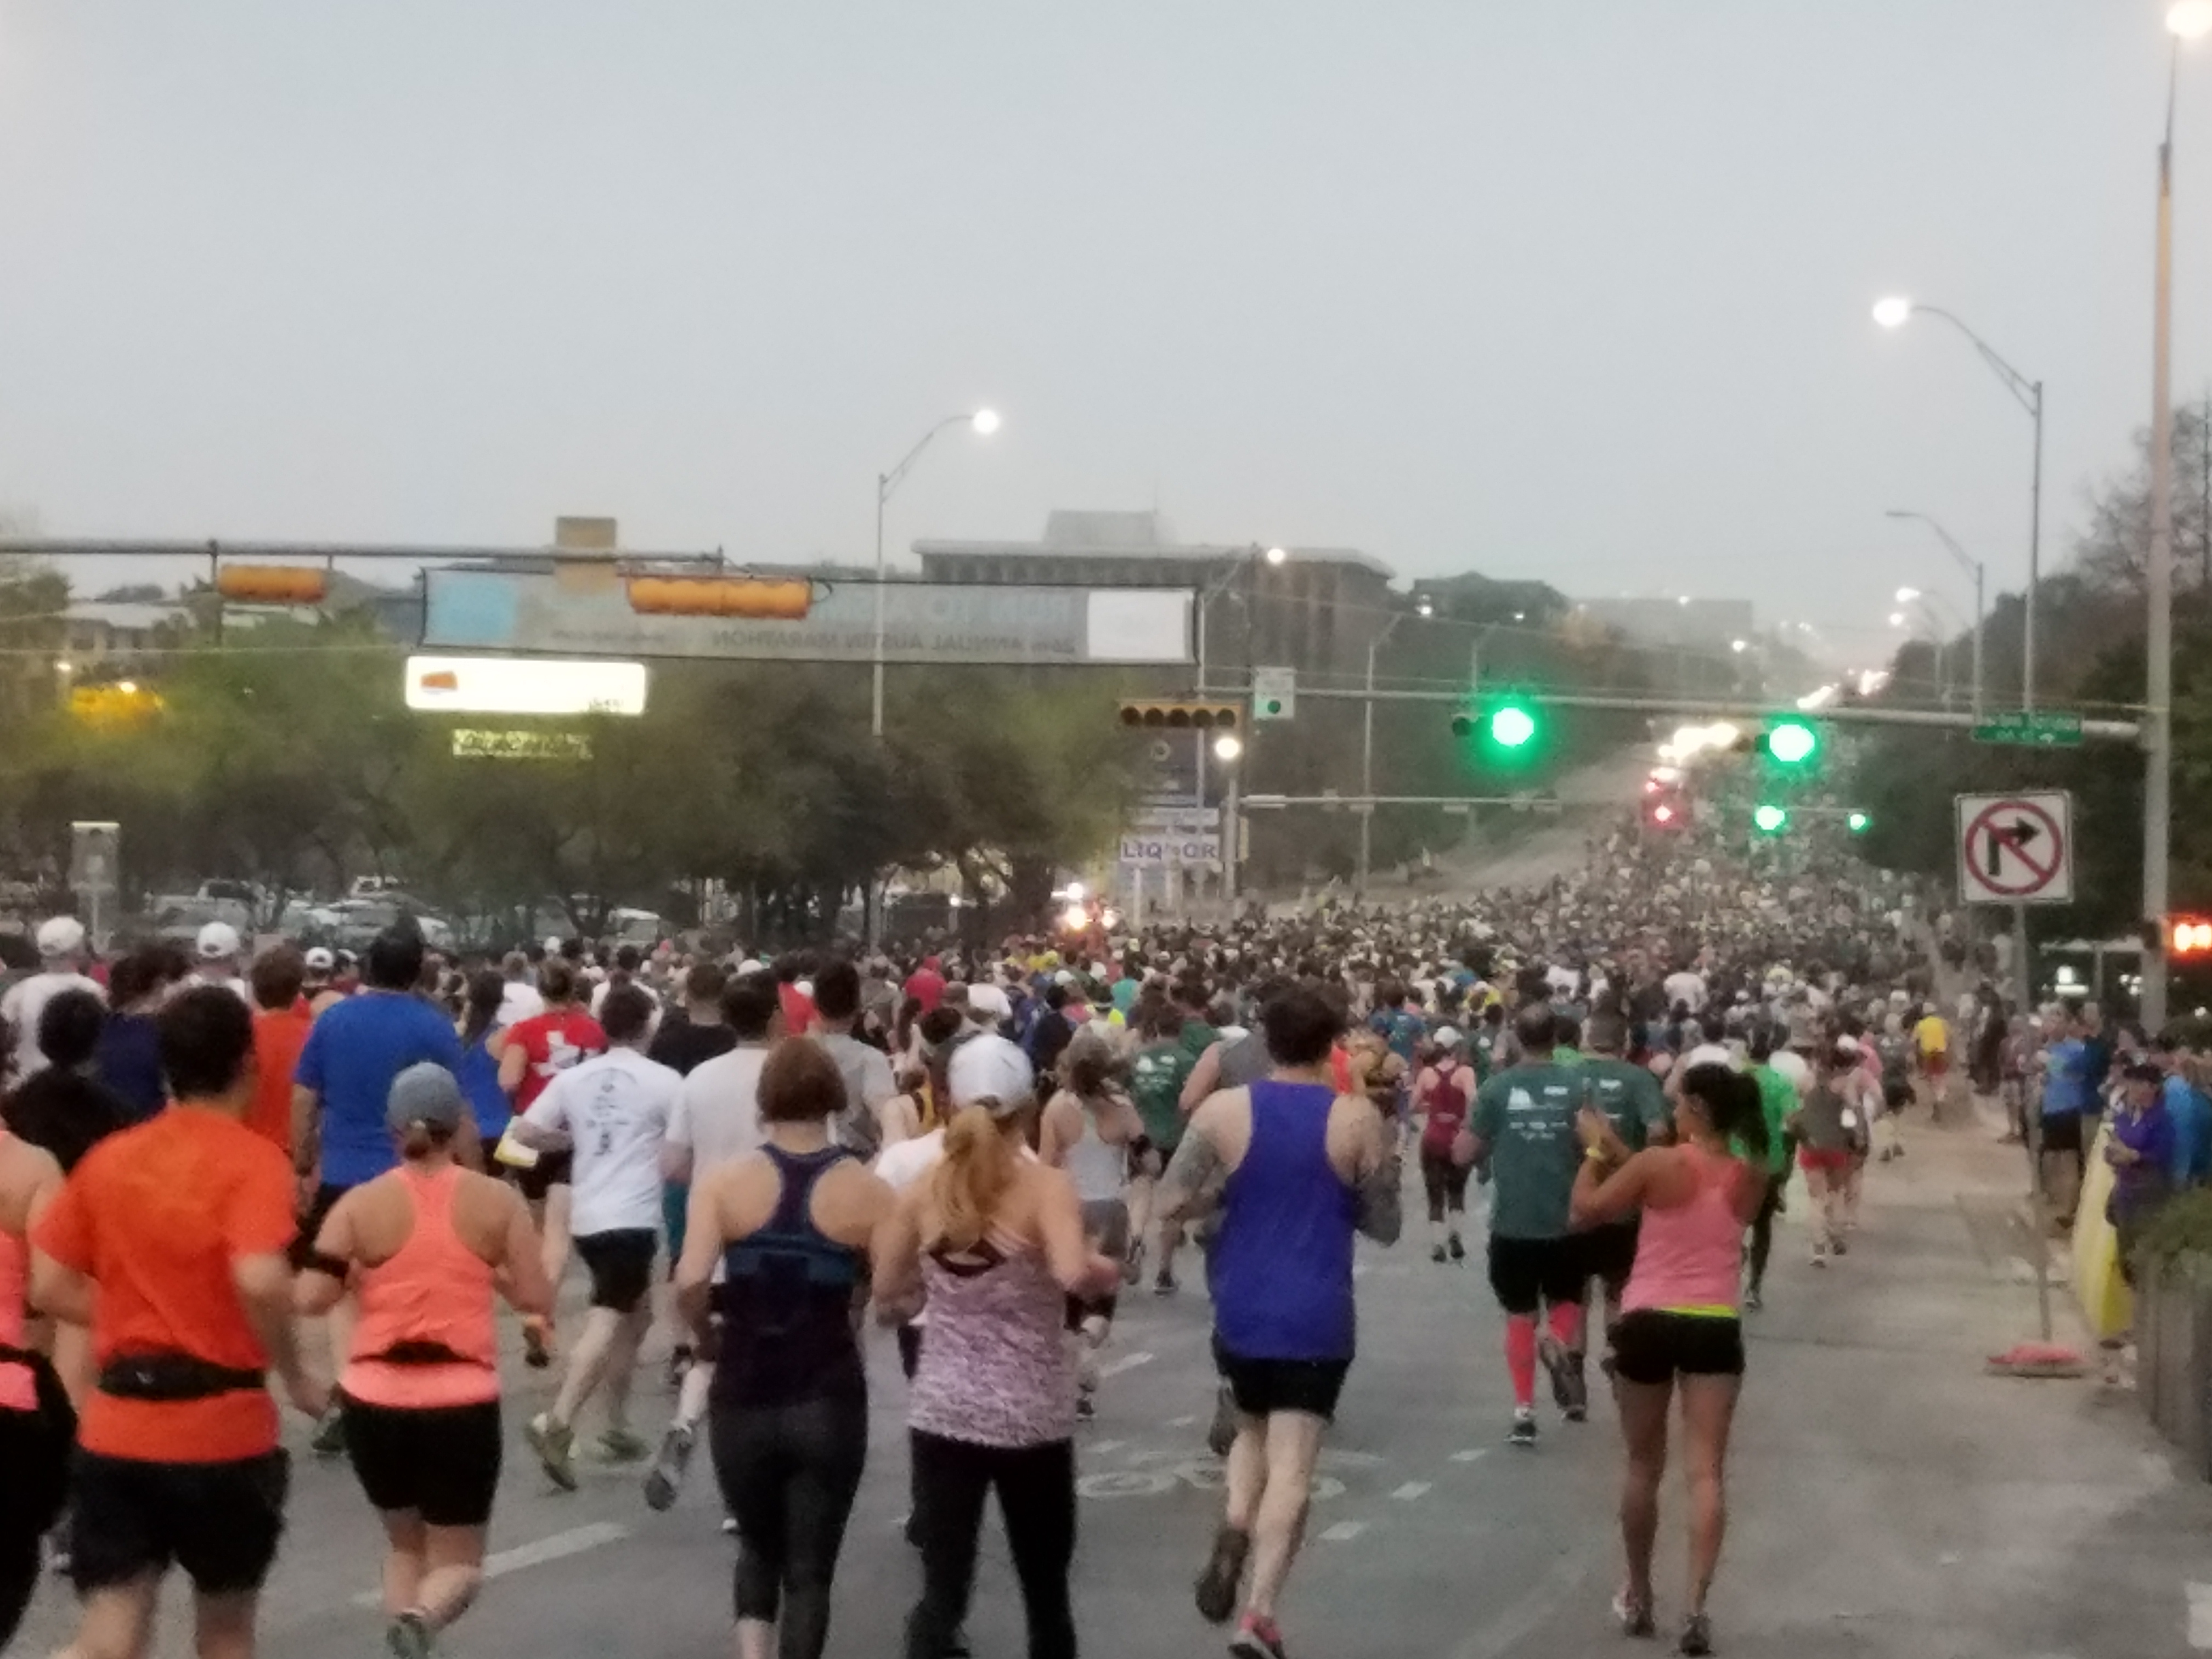 The Half Marathon and JJ Update